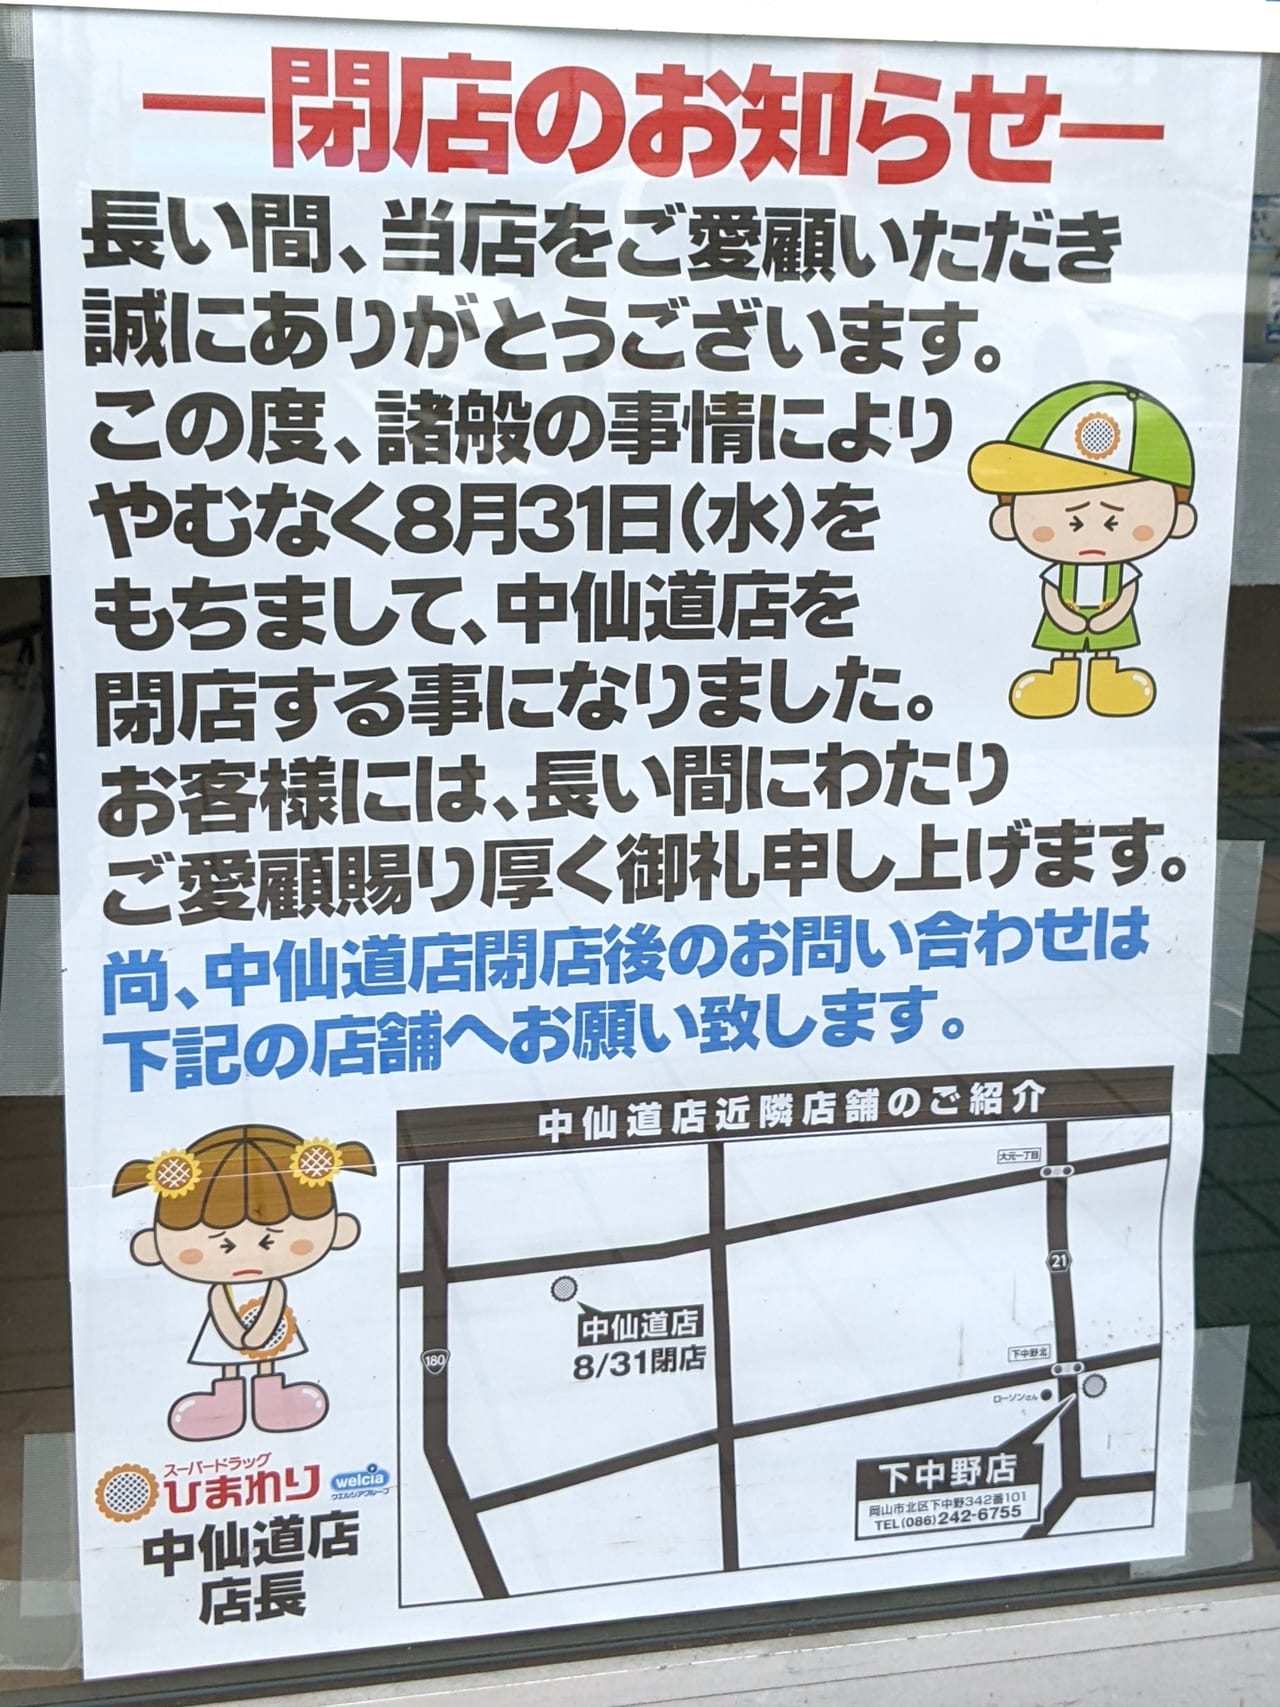 「スーパードラッグひまわり 中仙道店」の閉店のお知らせ